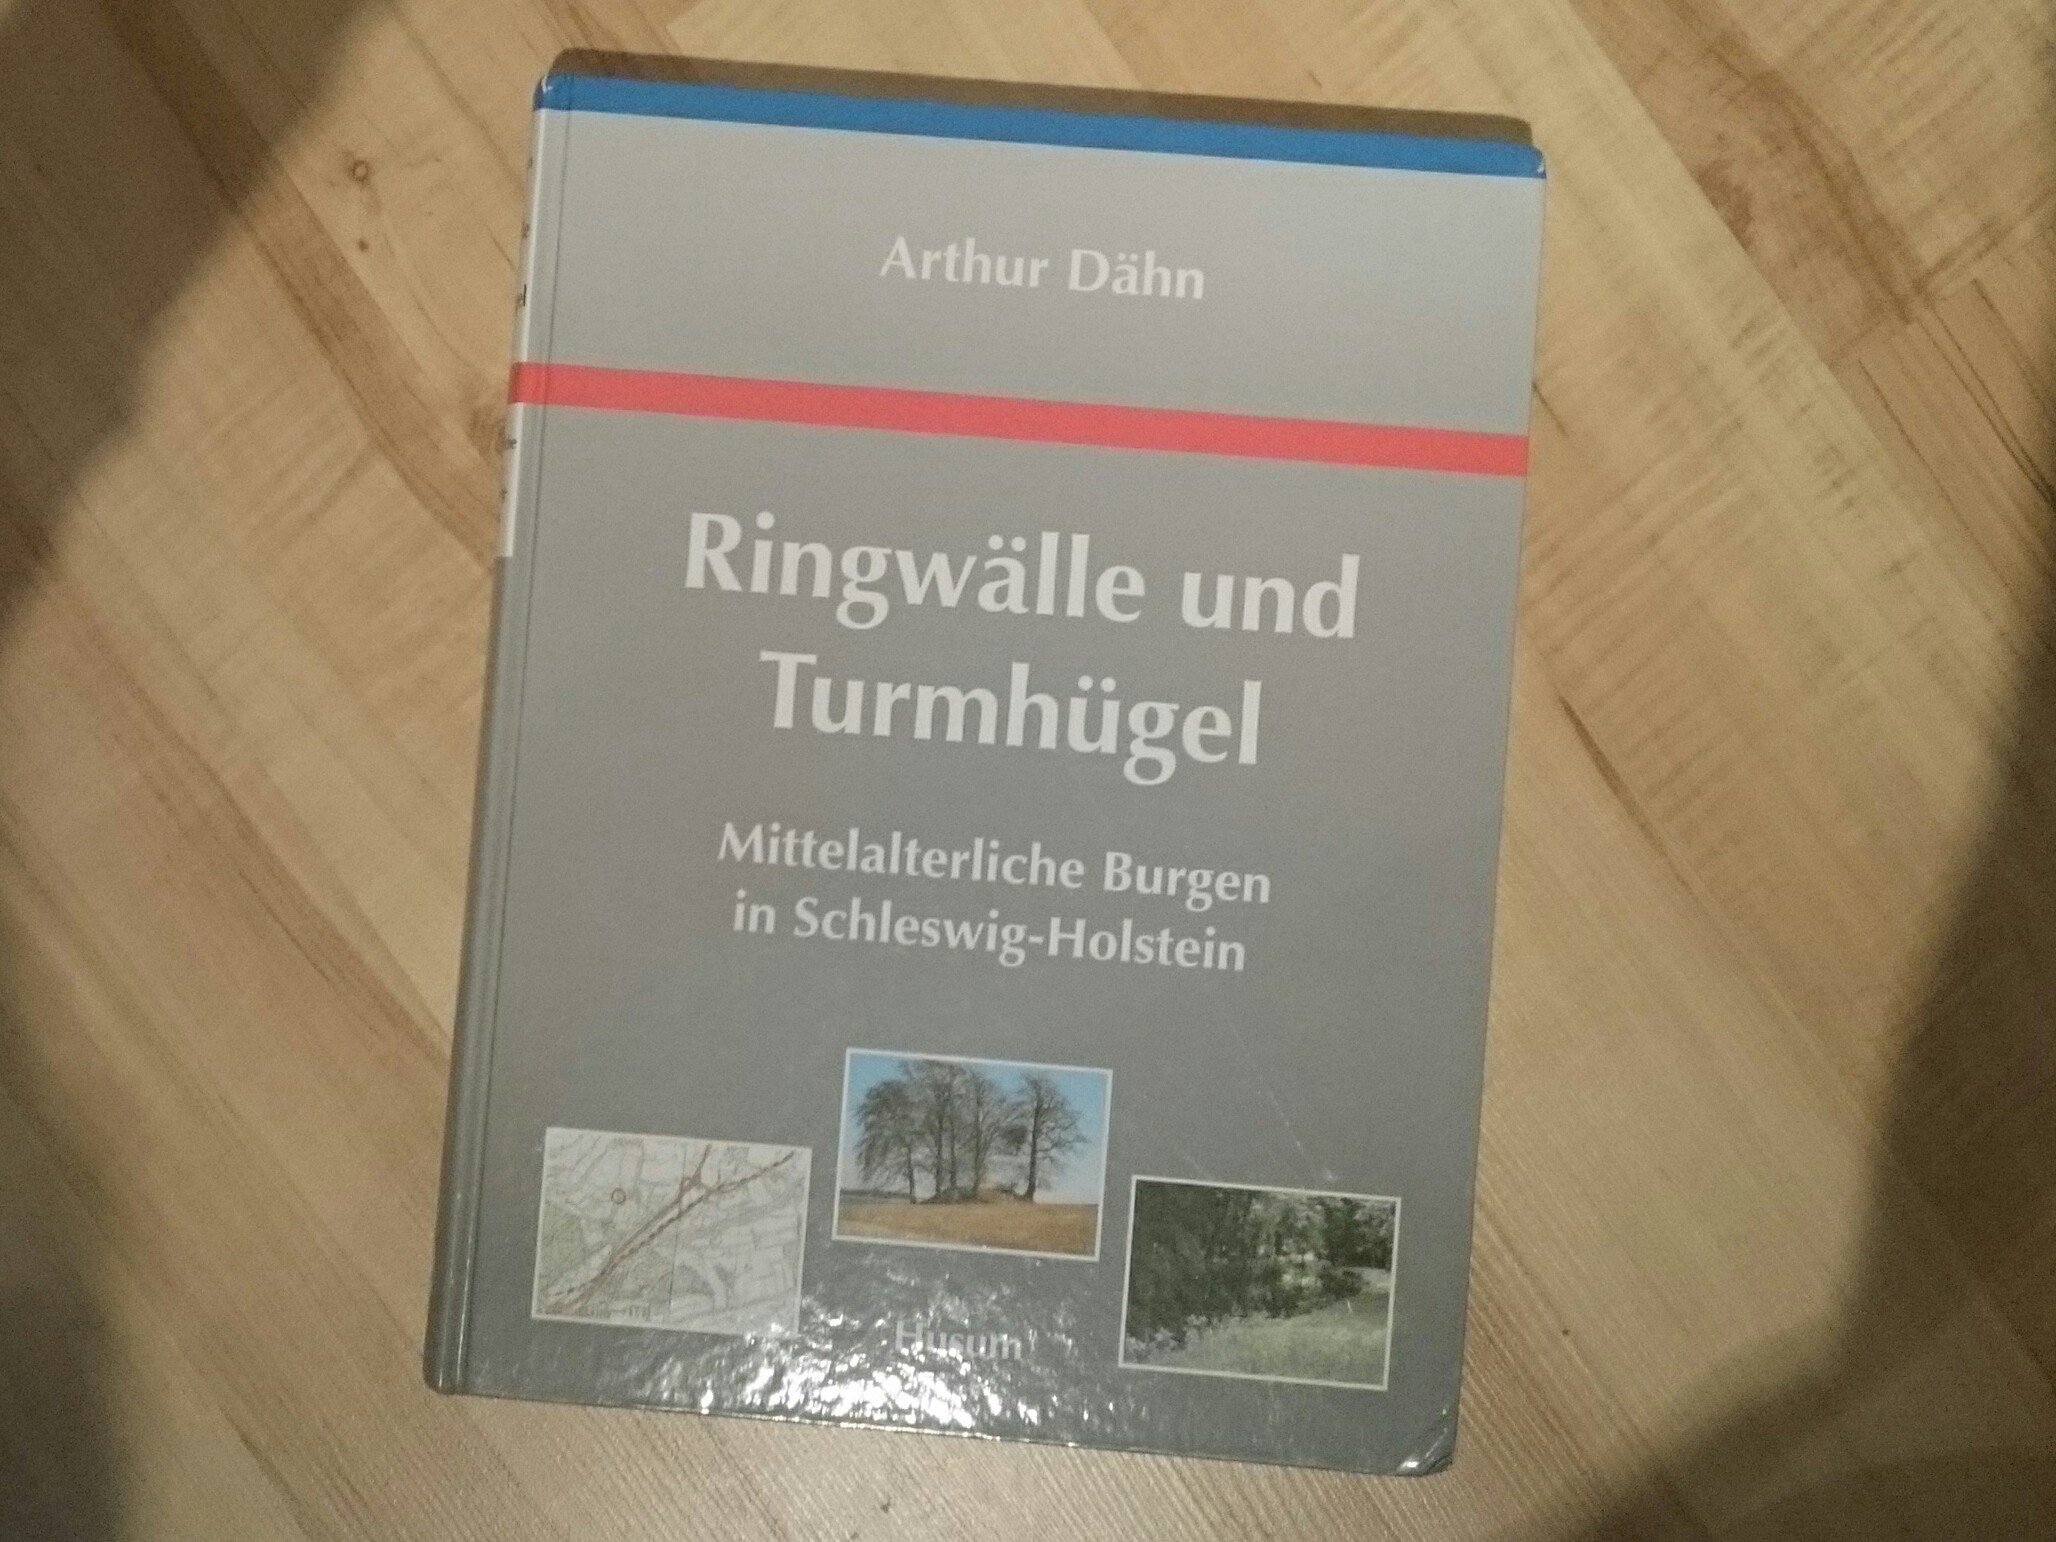 Welch wichtiges Werk, um unsere Schleswig-Holsteinische Geschichte besser kennenlernen und zu verstehen 